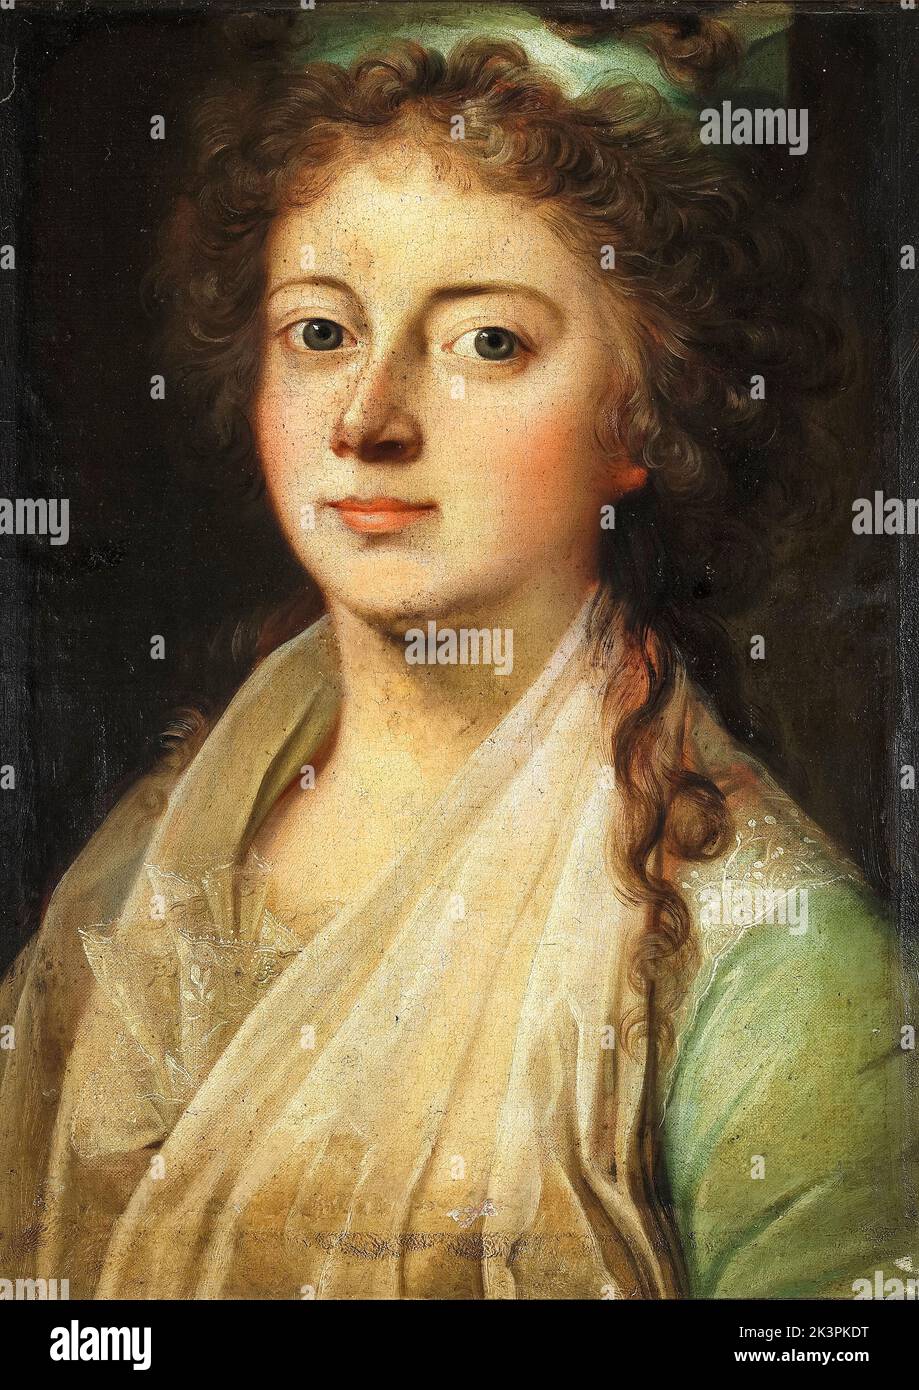 Marie Sophie Frederikke, de Hesse-Kassel (1767-1852), Reina de Dinamarca y Noruega, en matrimonio con Federico VI y Regente de Dinamarca (1814-1815), retrato al óleo sobre lienzo de Jens Juel, 1790-1799 Foto de stock